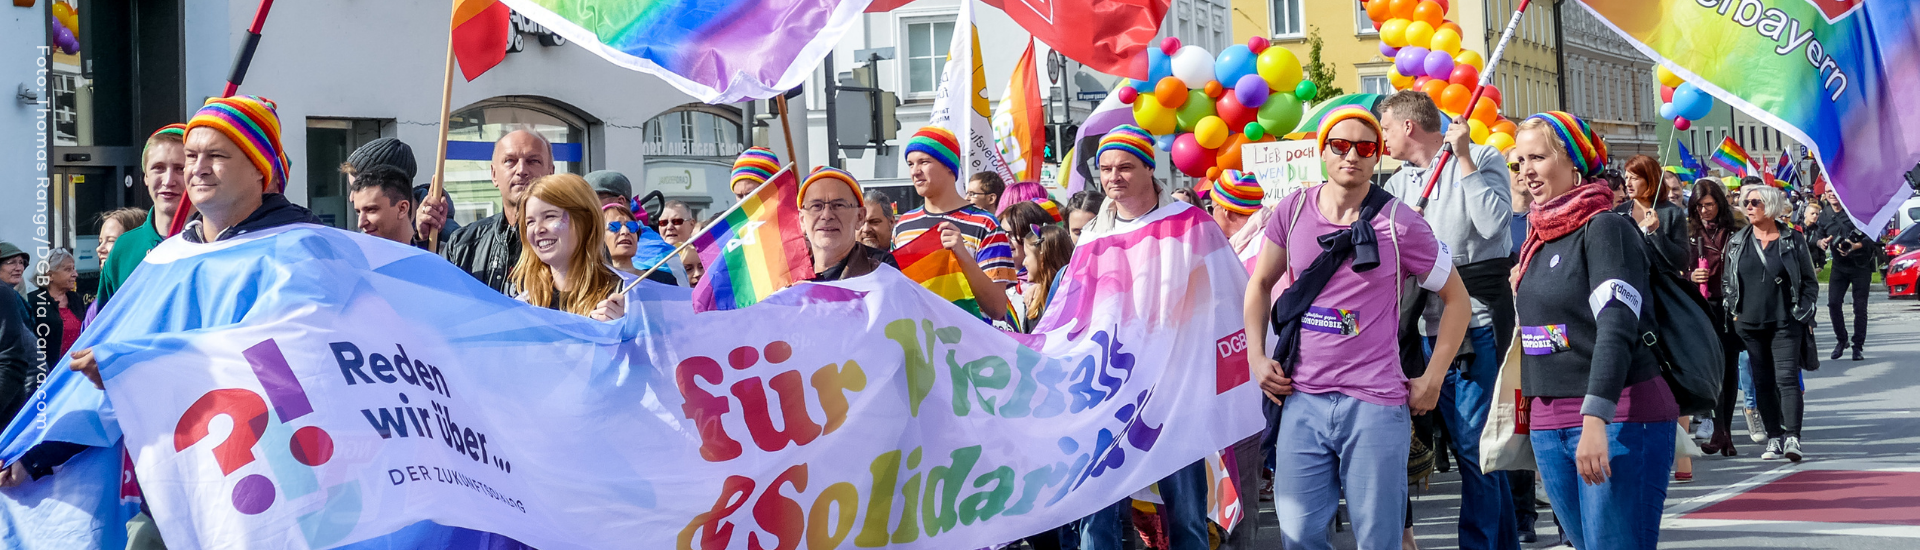 Menschen demonstrieren für die Rechte Queerer Personen